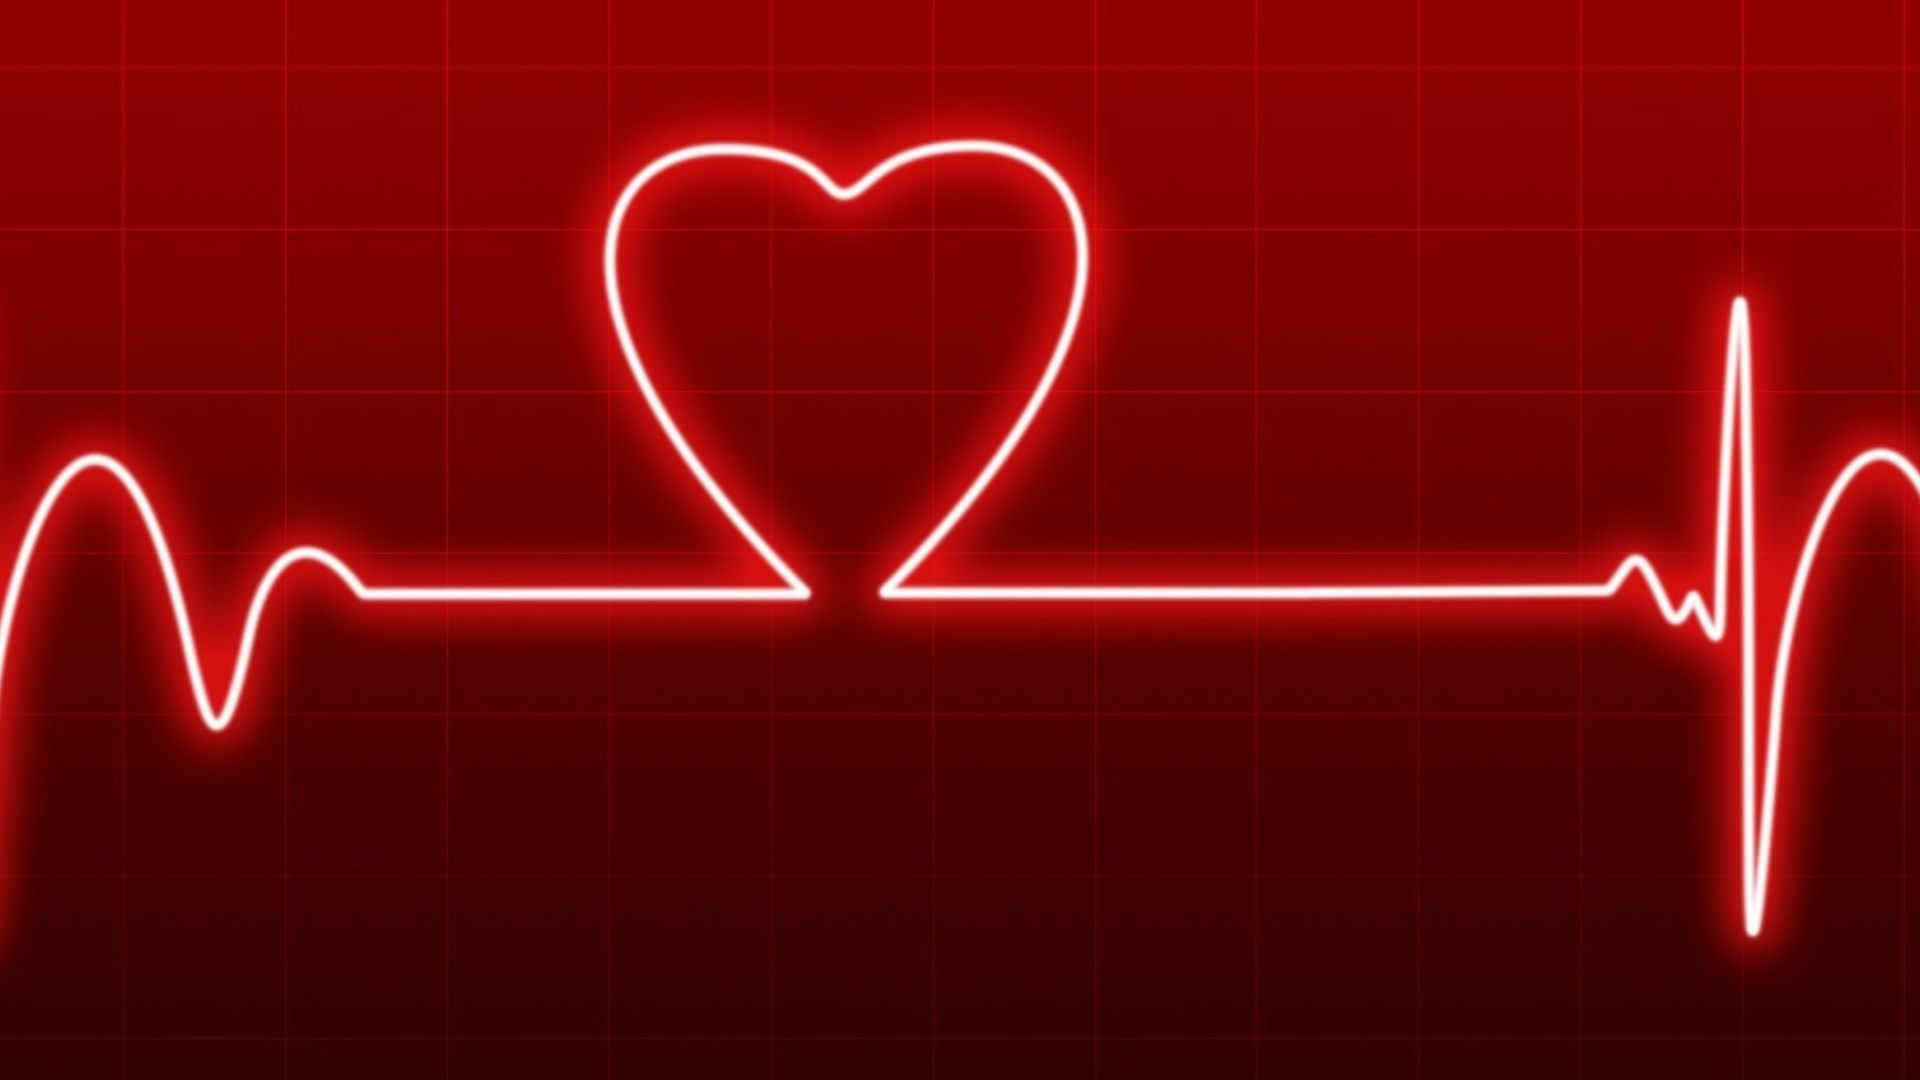 Imagem de um batimento cardíaco em formato de coração em um fundo vermelho